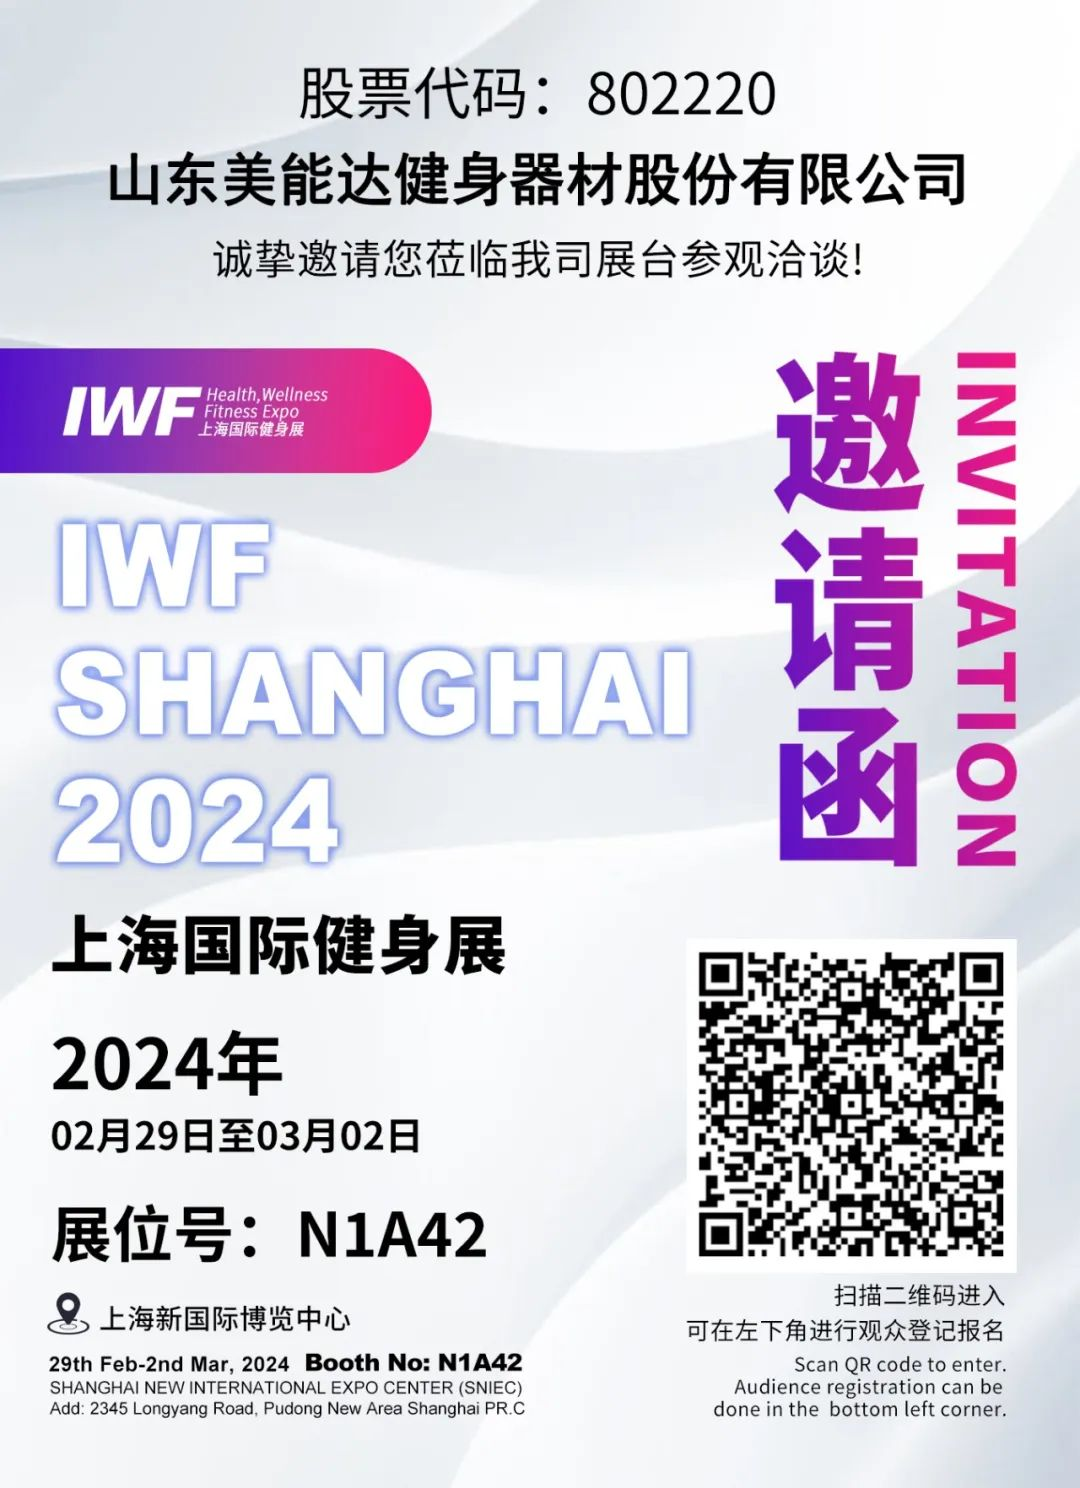 Minolta us convida cordialment a visitar l'estand N1A42 per negociar a l'Exposició Internacional de Fitness de Xangai 2024.